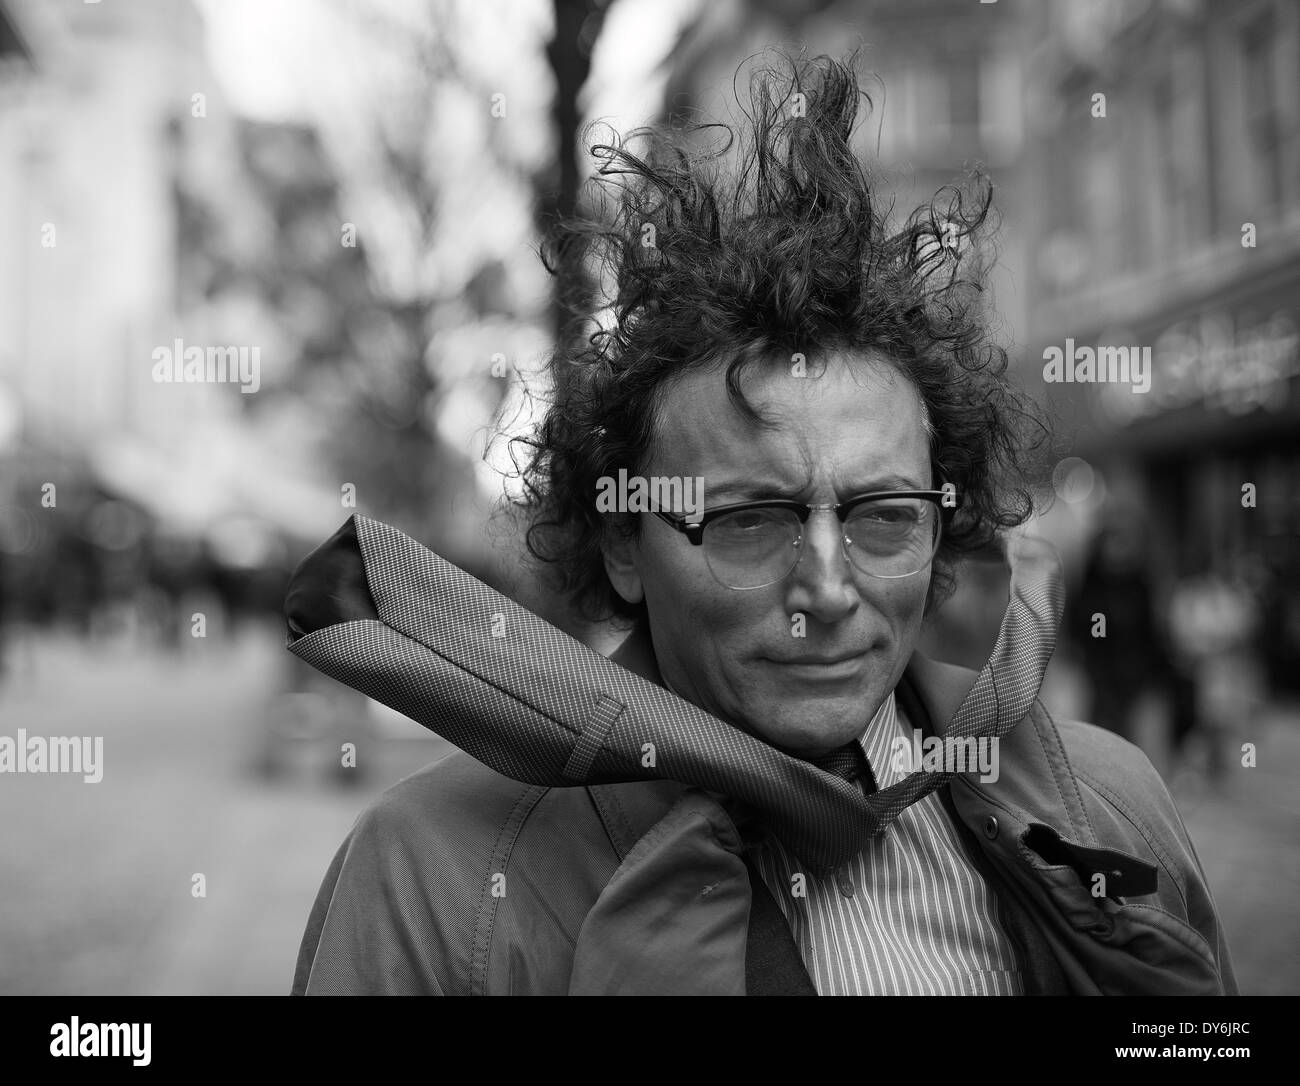 Retrato de un hombre en Manchester con viento muy fuerte Foto de stock